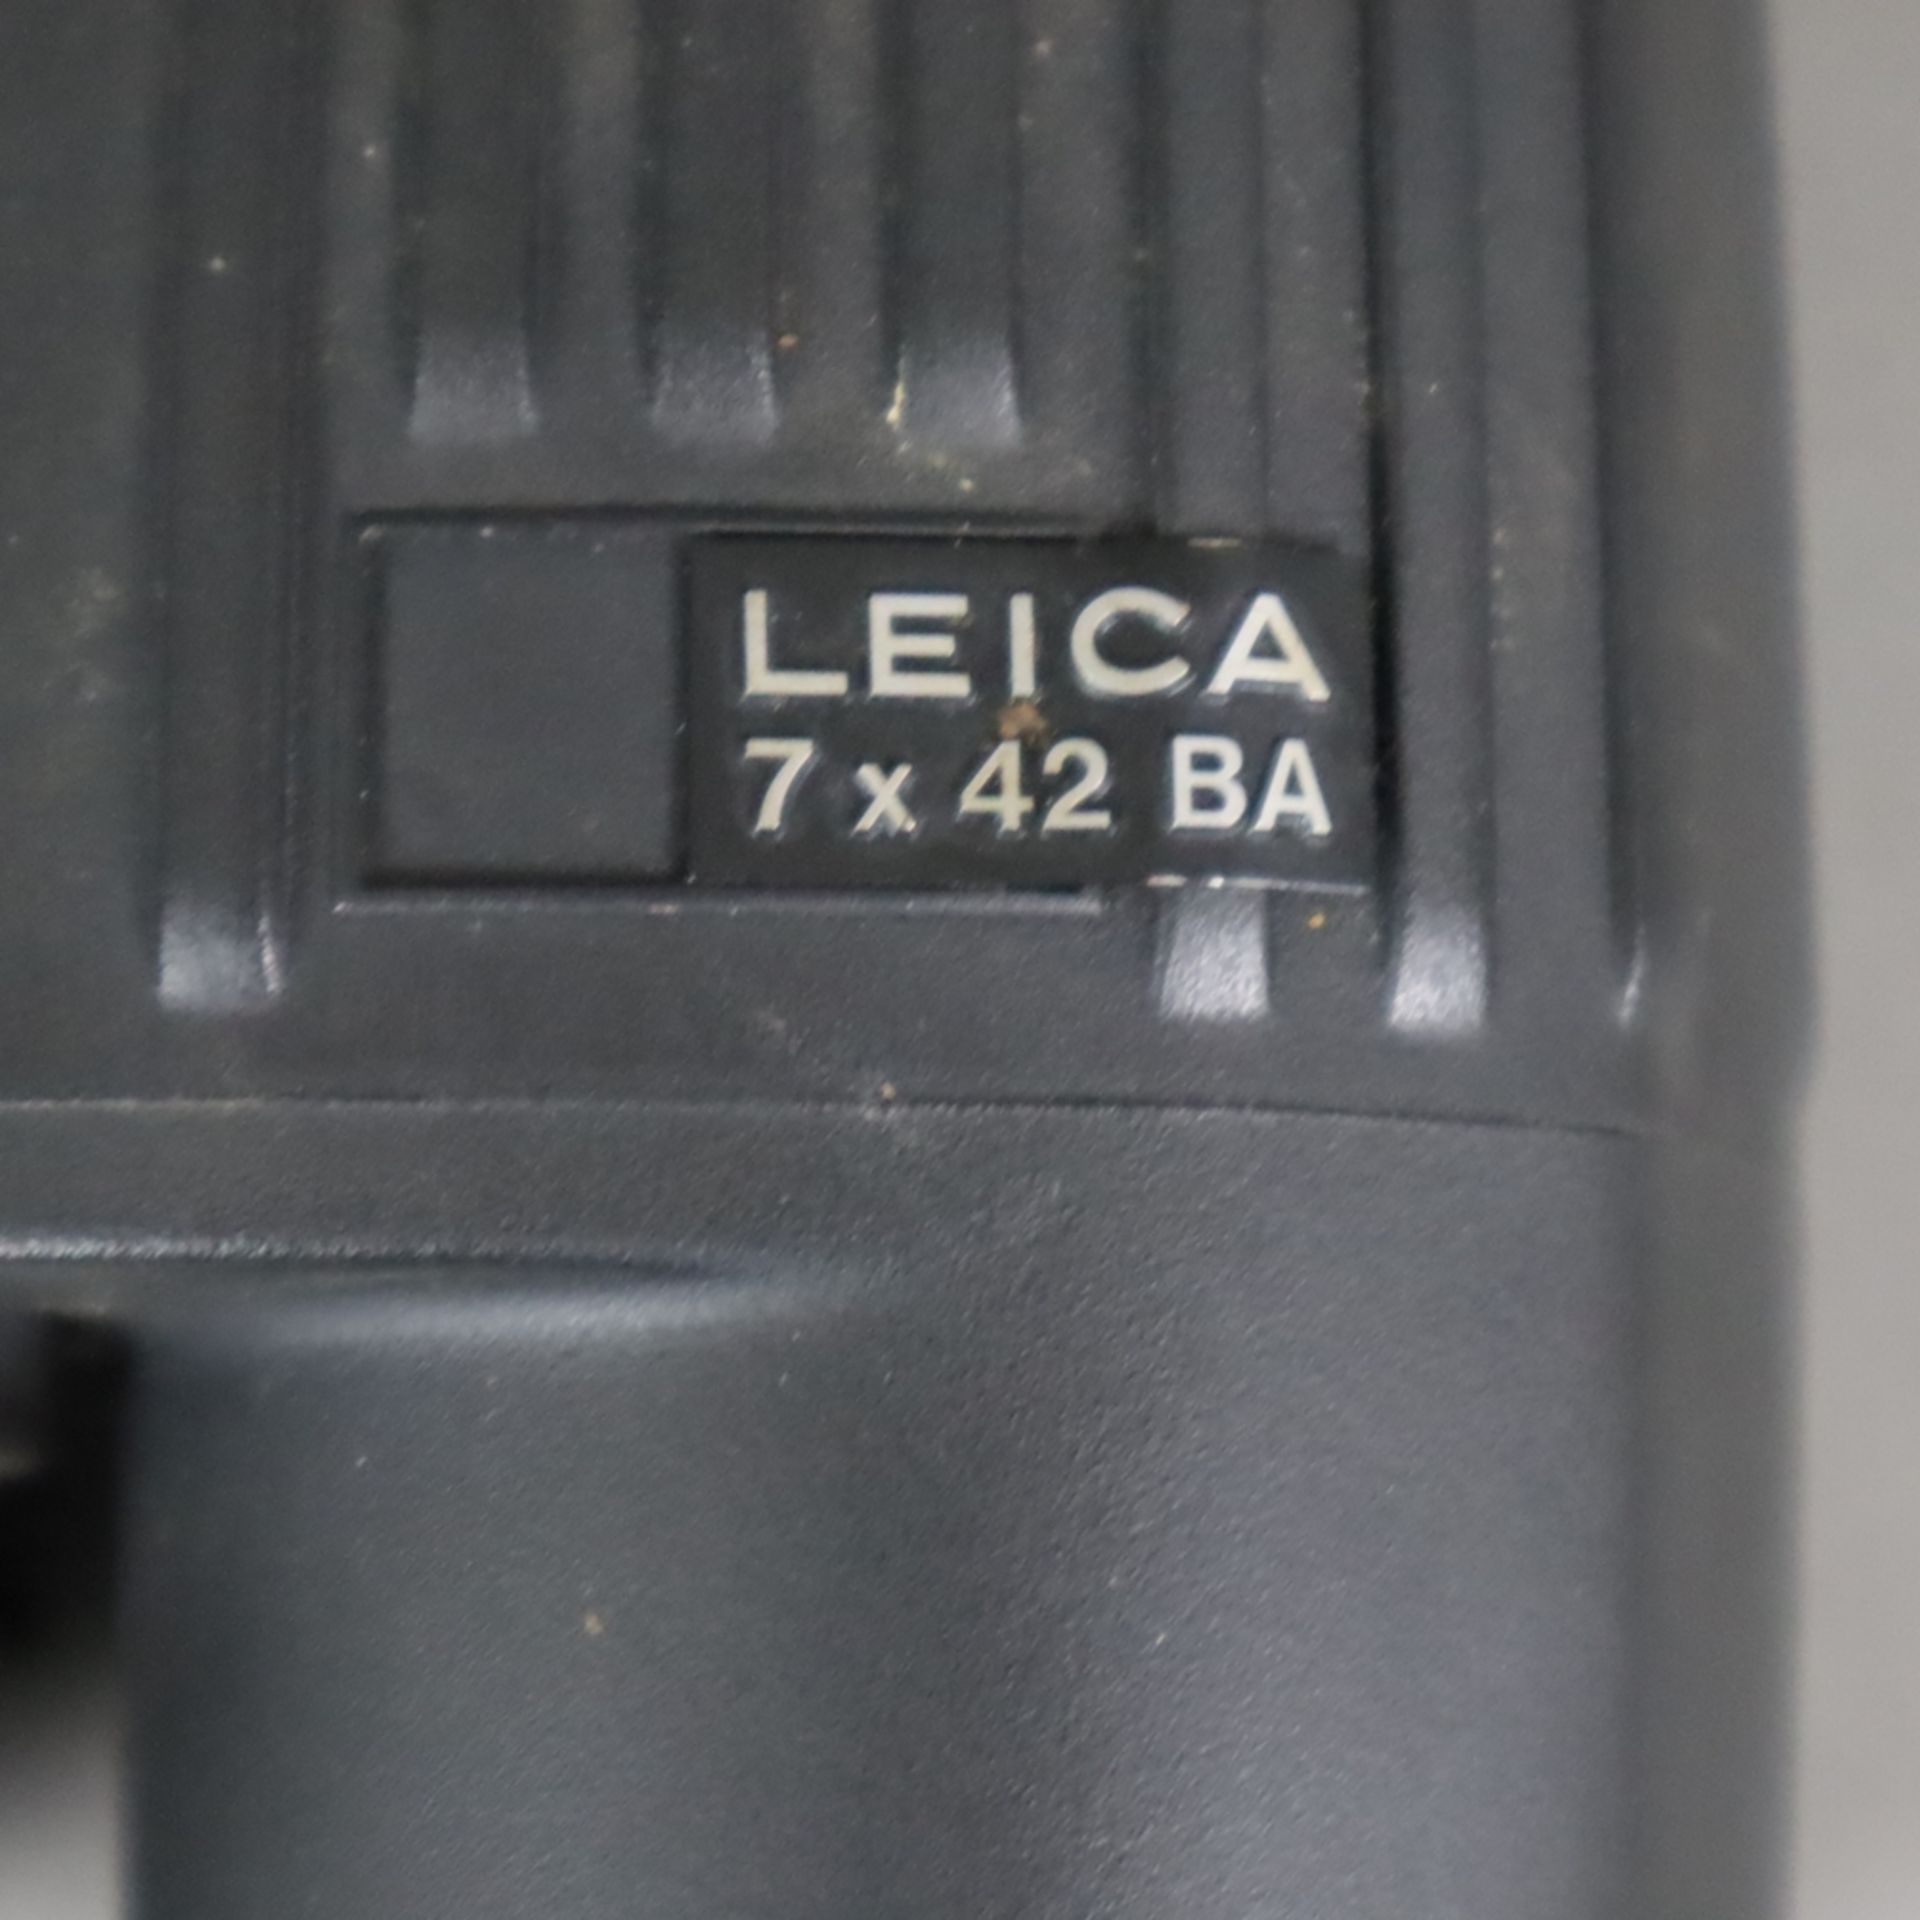 Leica Fernglas - 7x42 BA, Seriennummer 42144, guter Zustand, aus Raucherhaushalt - Bild 3 aus 6